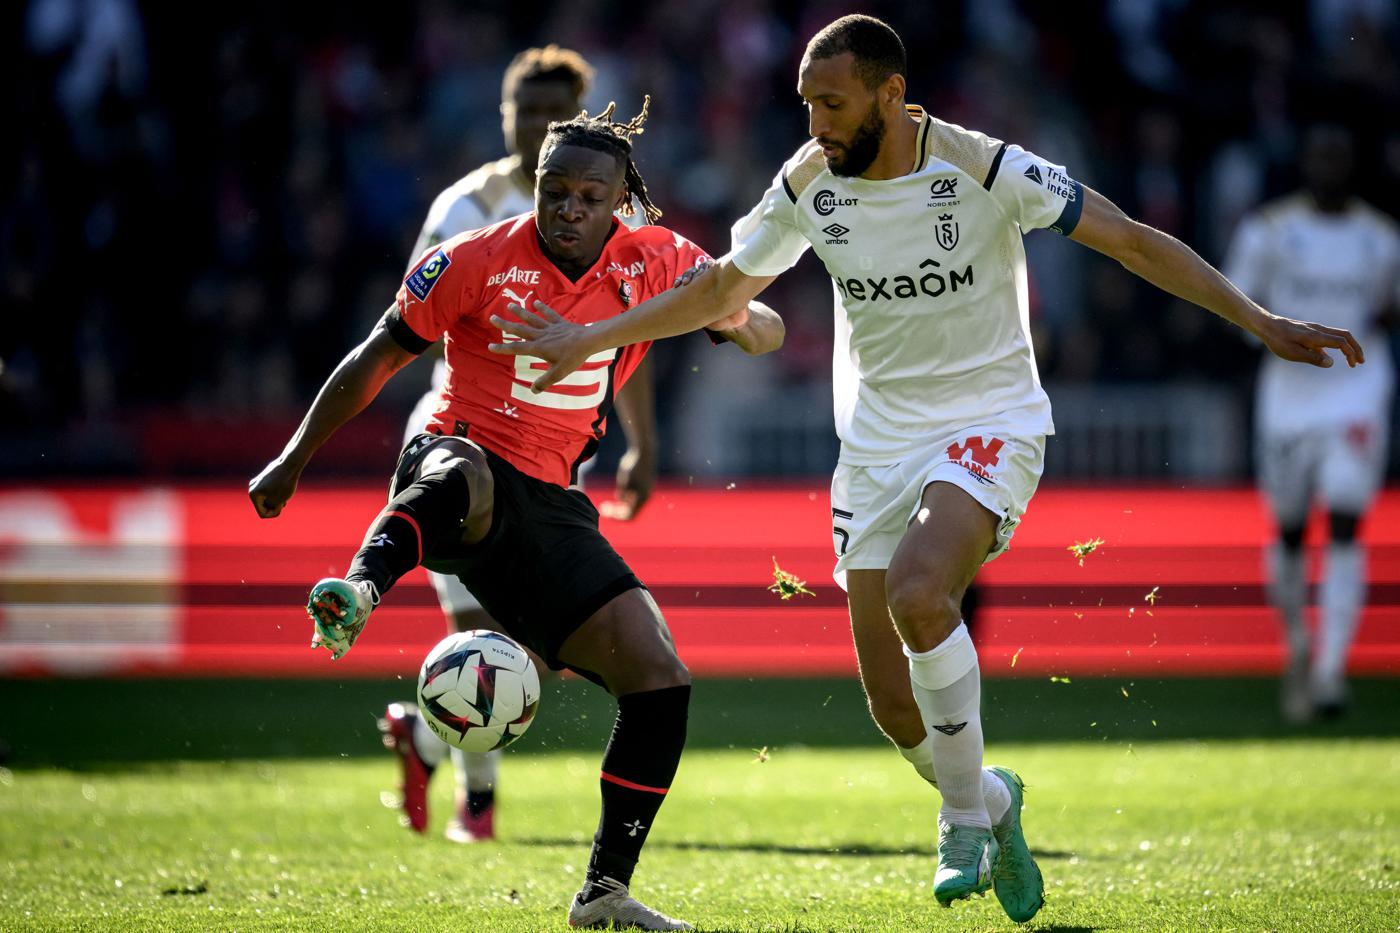 Rennes - Reims - 3:0. Mistrzostwa Francji, 31. runda. Przegląd meczu, statystyki